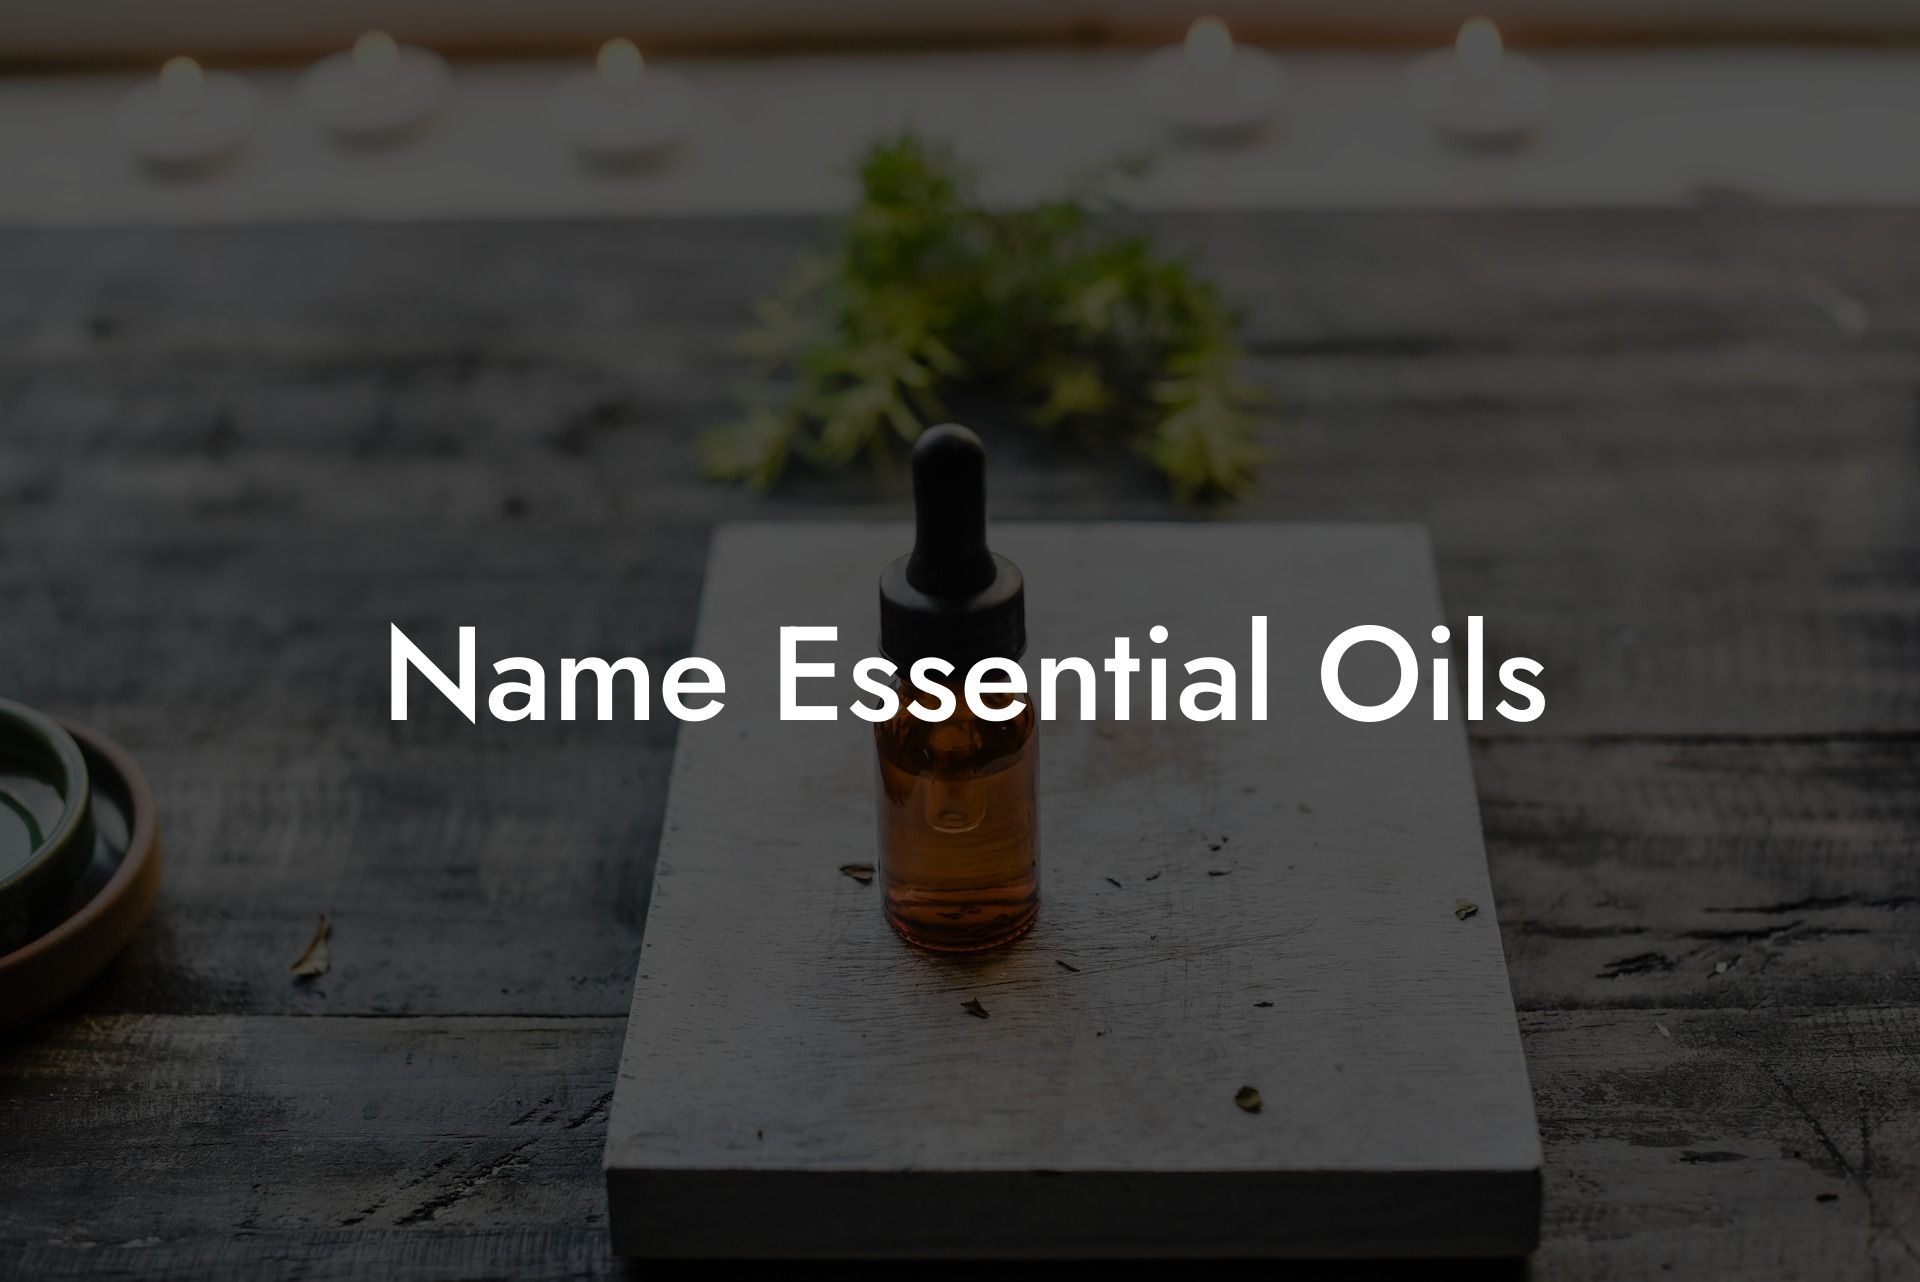 Name Essential Oils